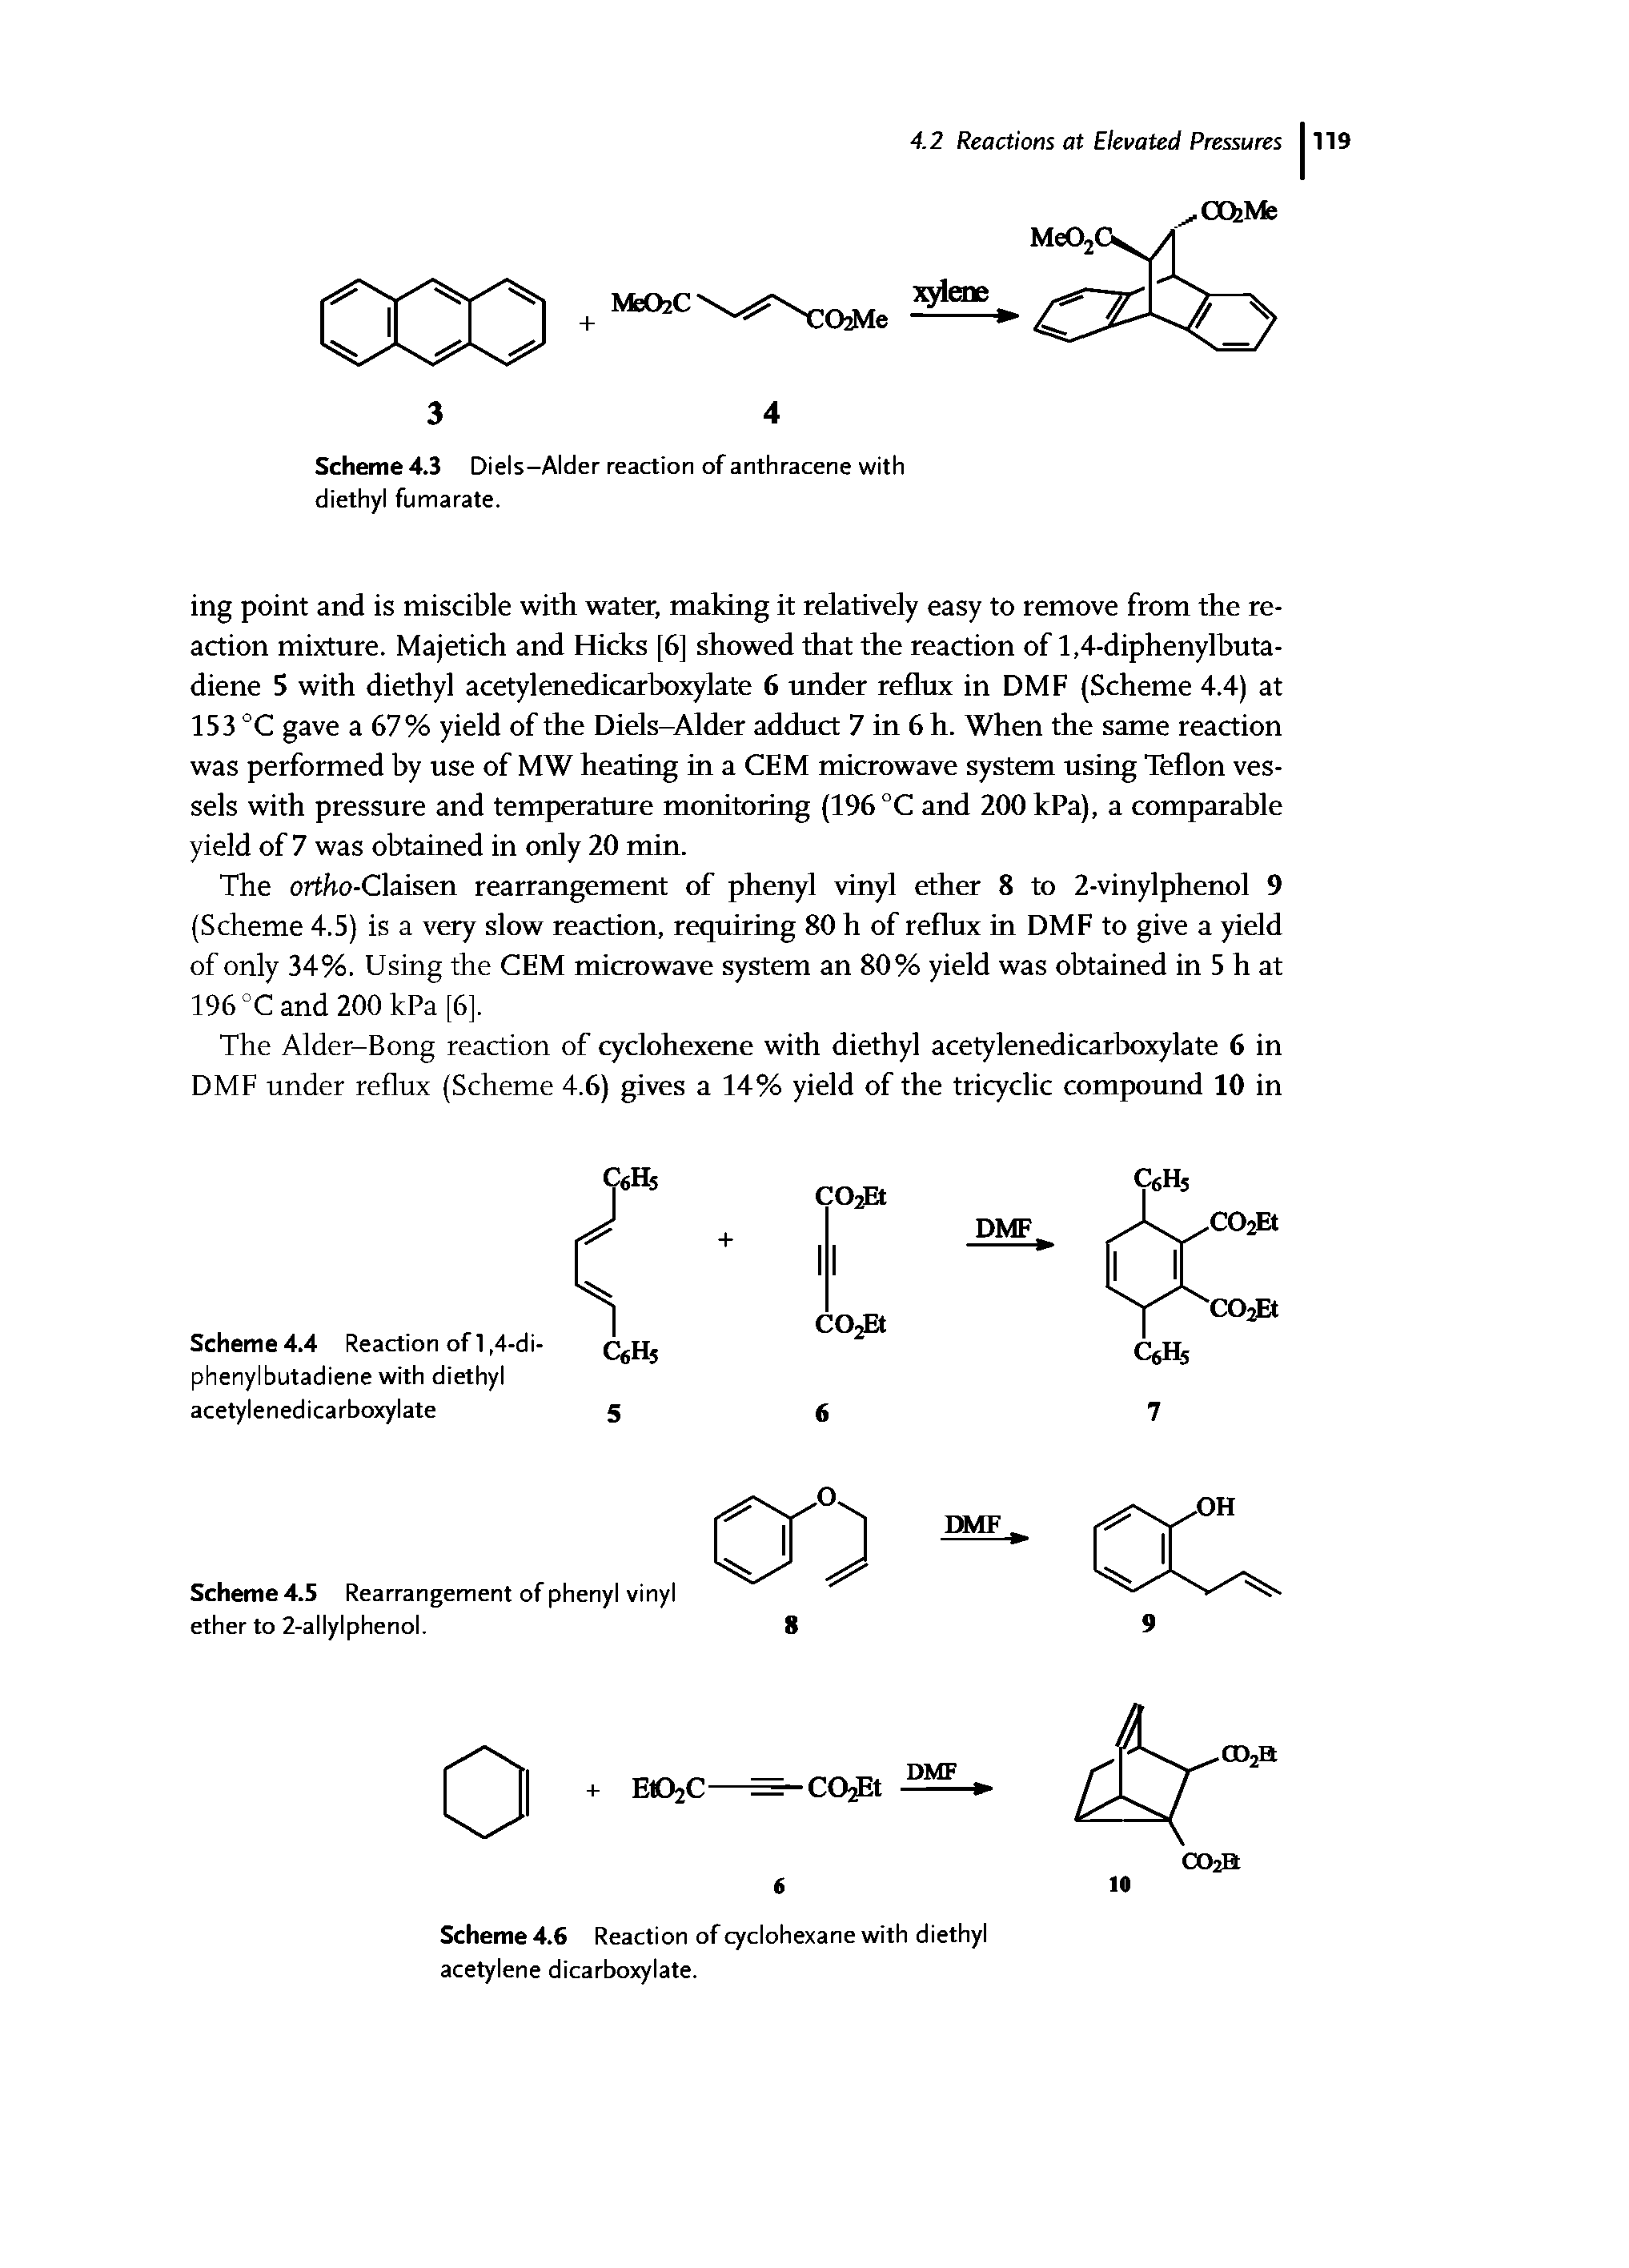 Scheme 4.5 Rearrangement of phenyl vinyl ether to 2-allylphenol.